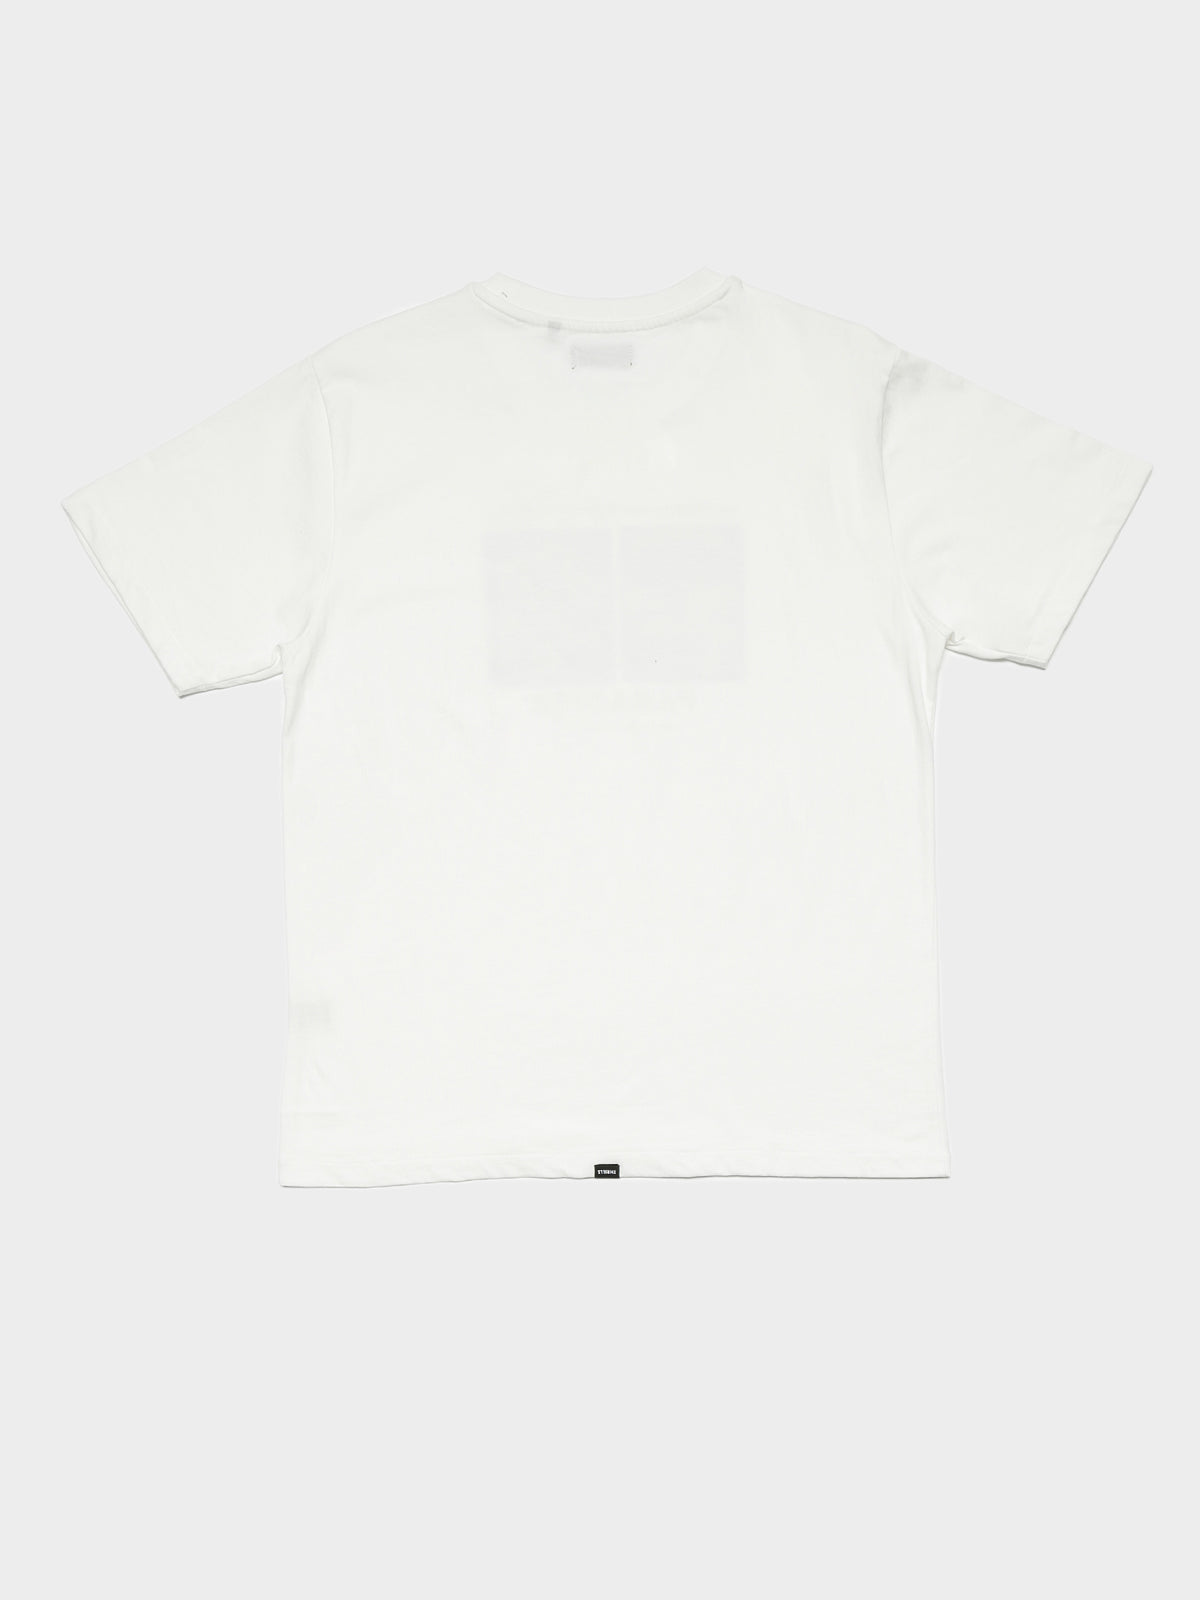 Hypnotica Merch Fit T-Shirt in White